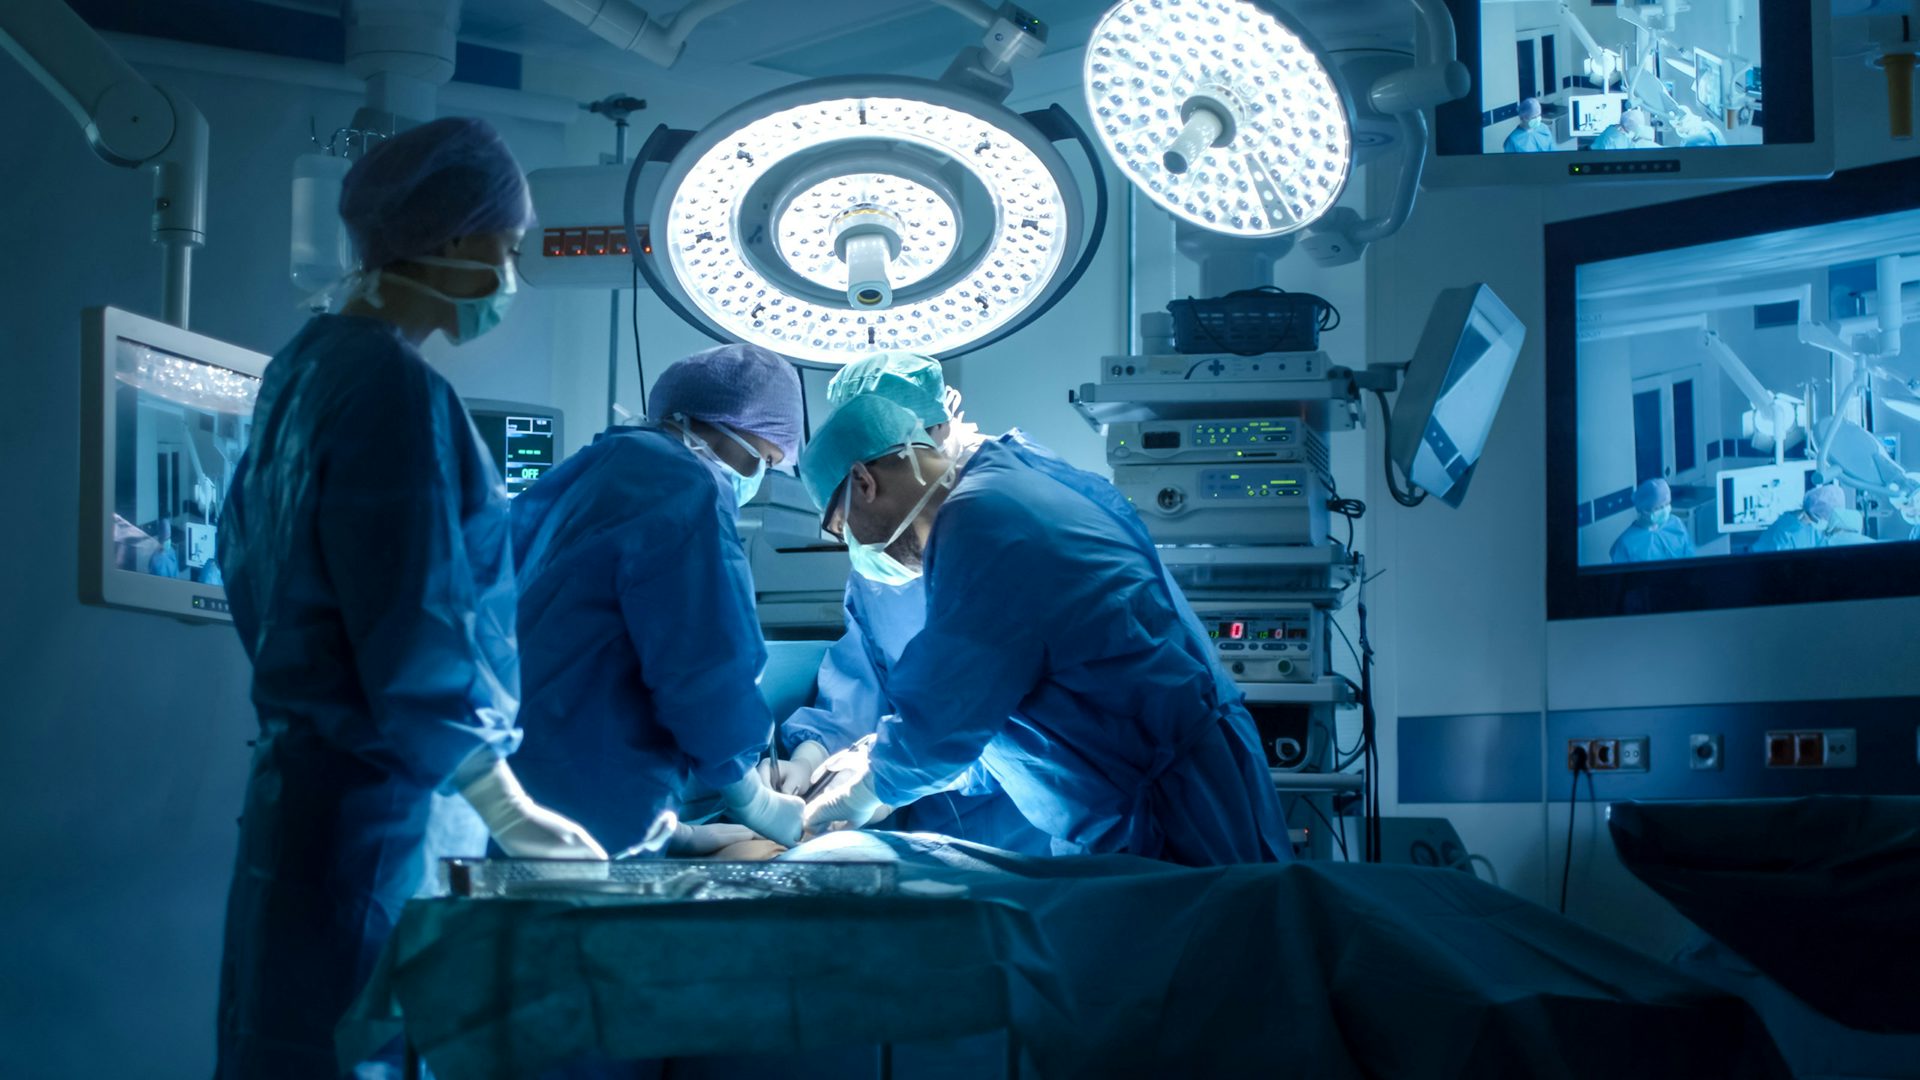 Cirujanos que realizan cirugías en un quirófano: Un equipo de cirujanos expertos que realizan un procedimiento médico en un quirófano estéril.